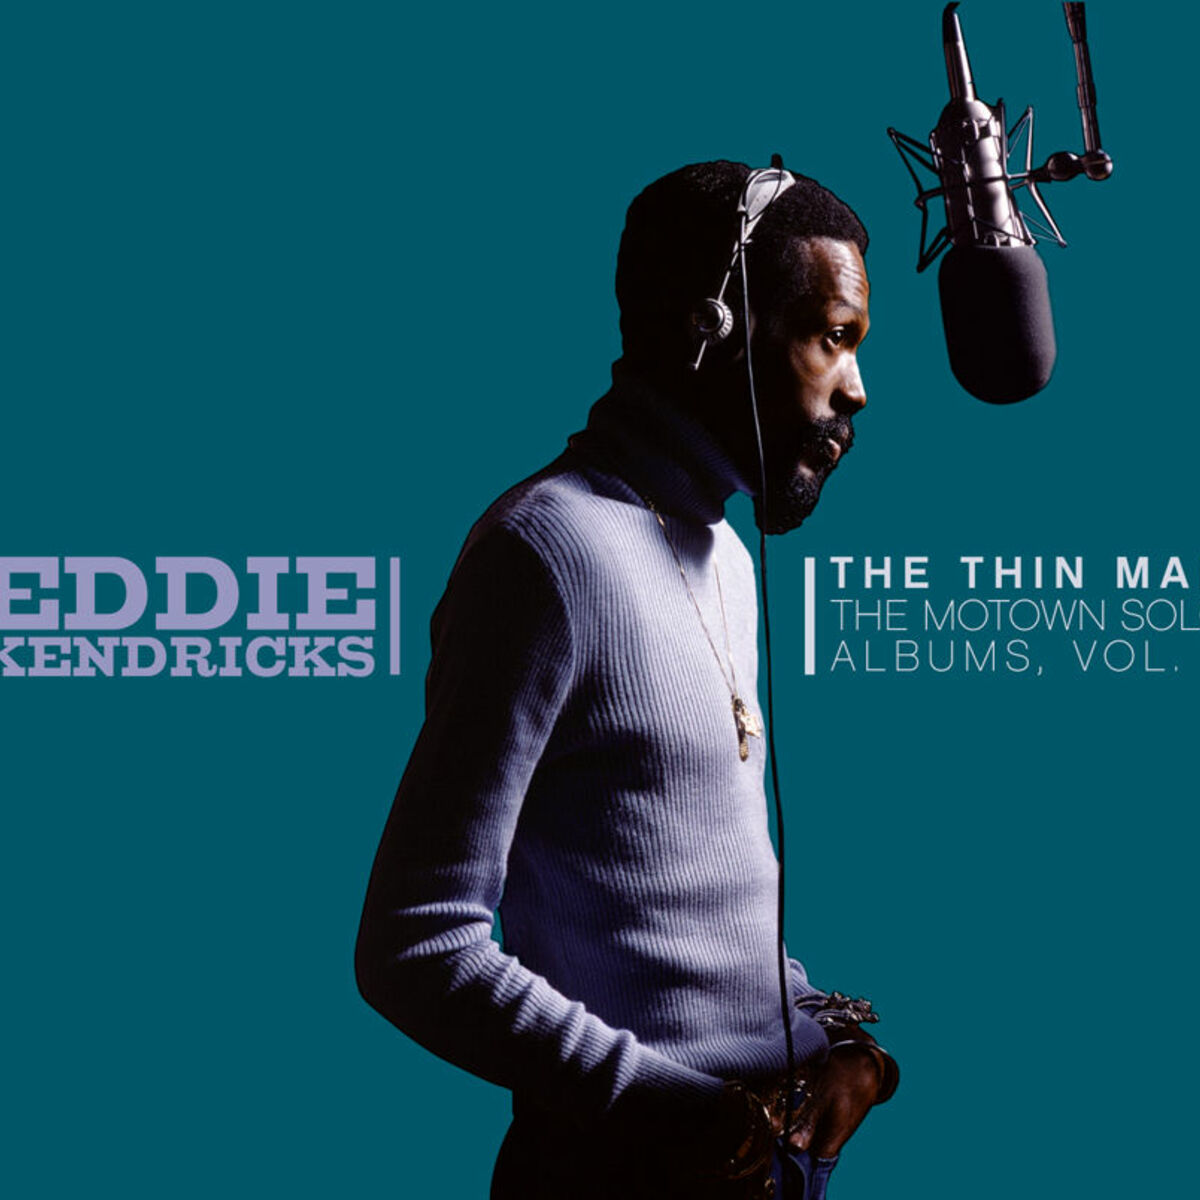 Eddie Kendricks - Boogie Down: listen with lyrics | Deezer